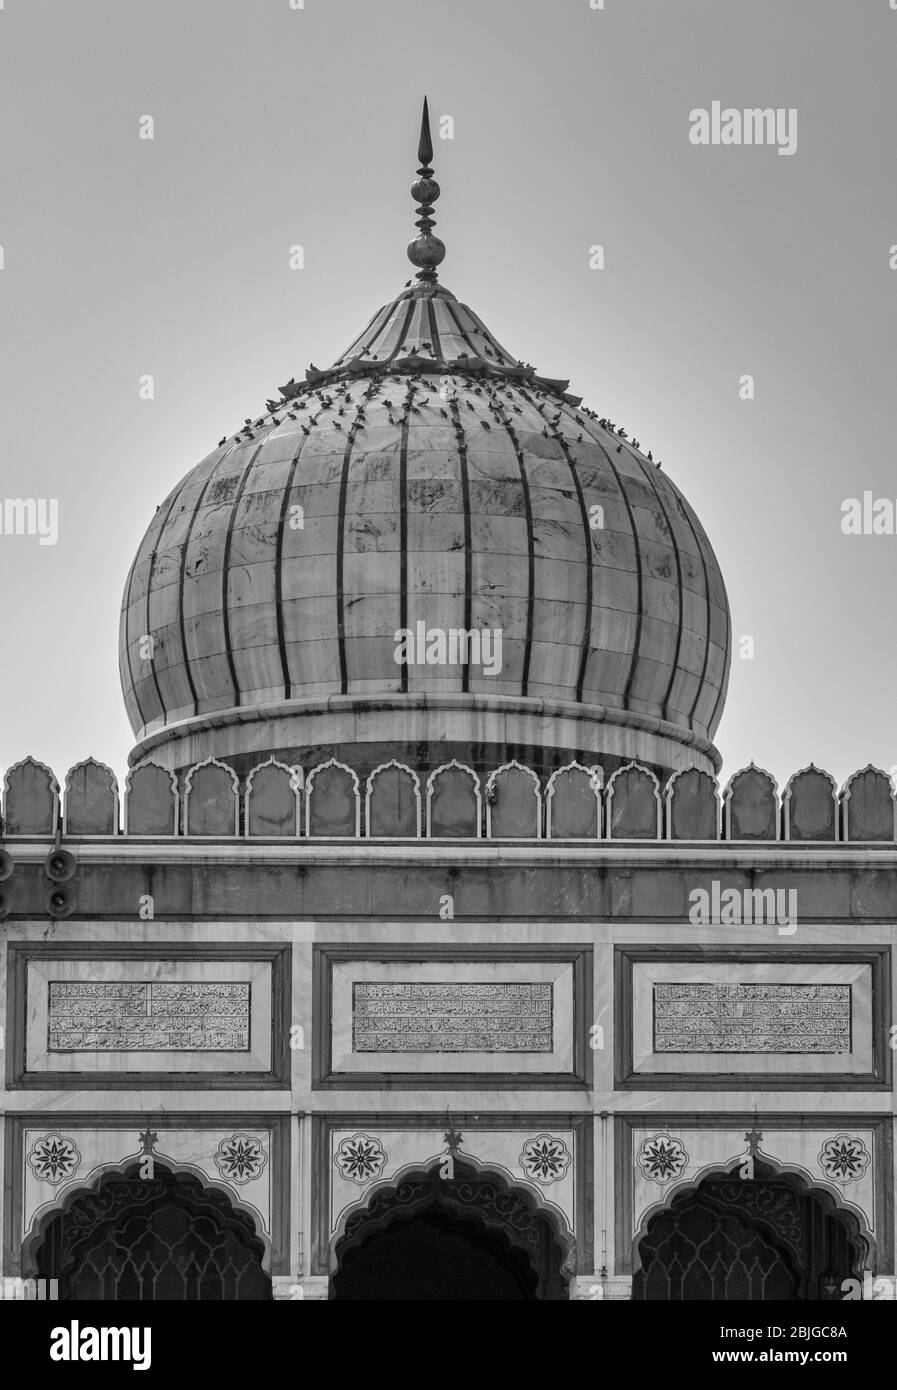 Masjid e Jahan Numa, moschea di Jama Masjid nella vecchia Delhi, una delle moschee più grandi in India Foto Stock